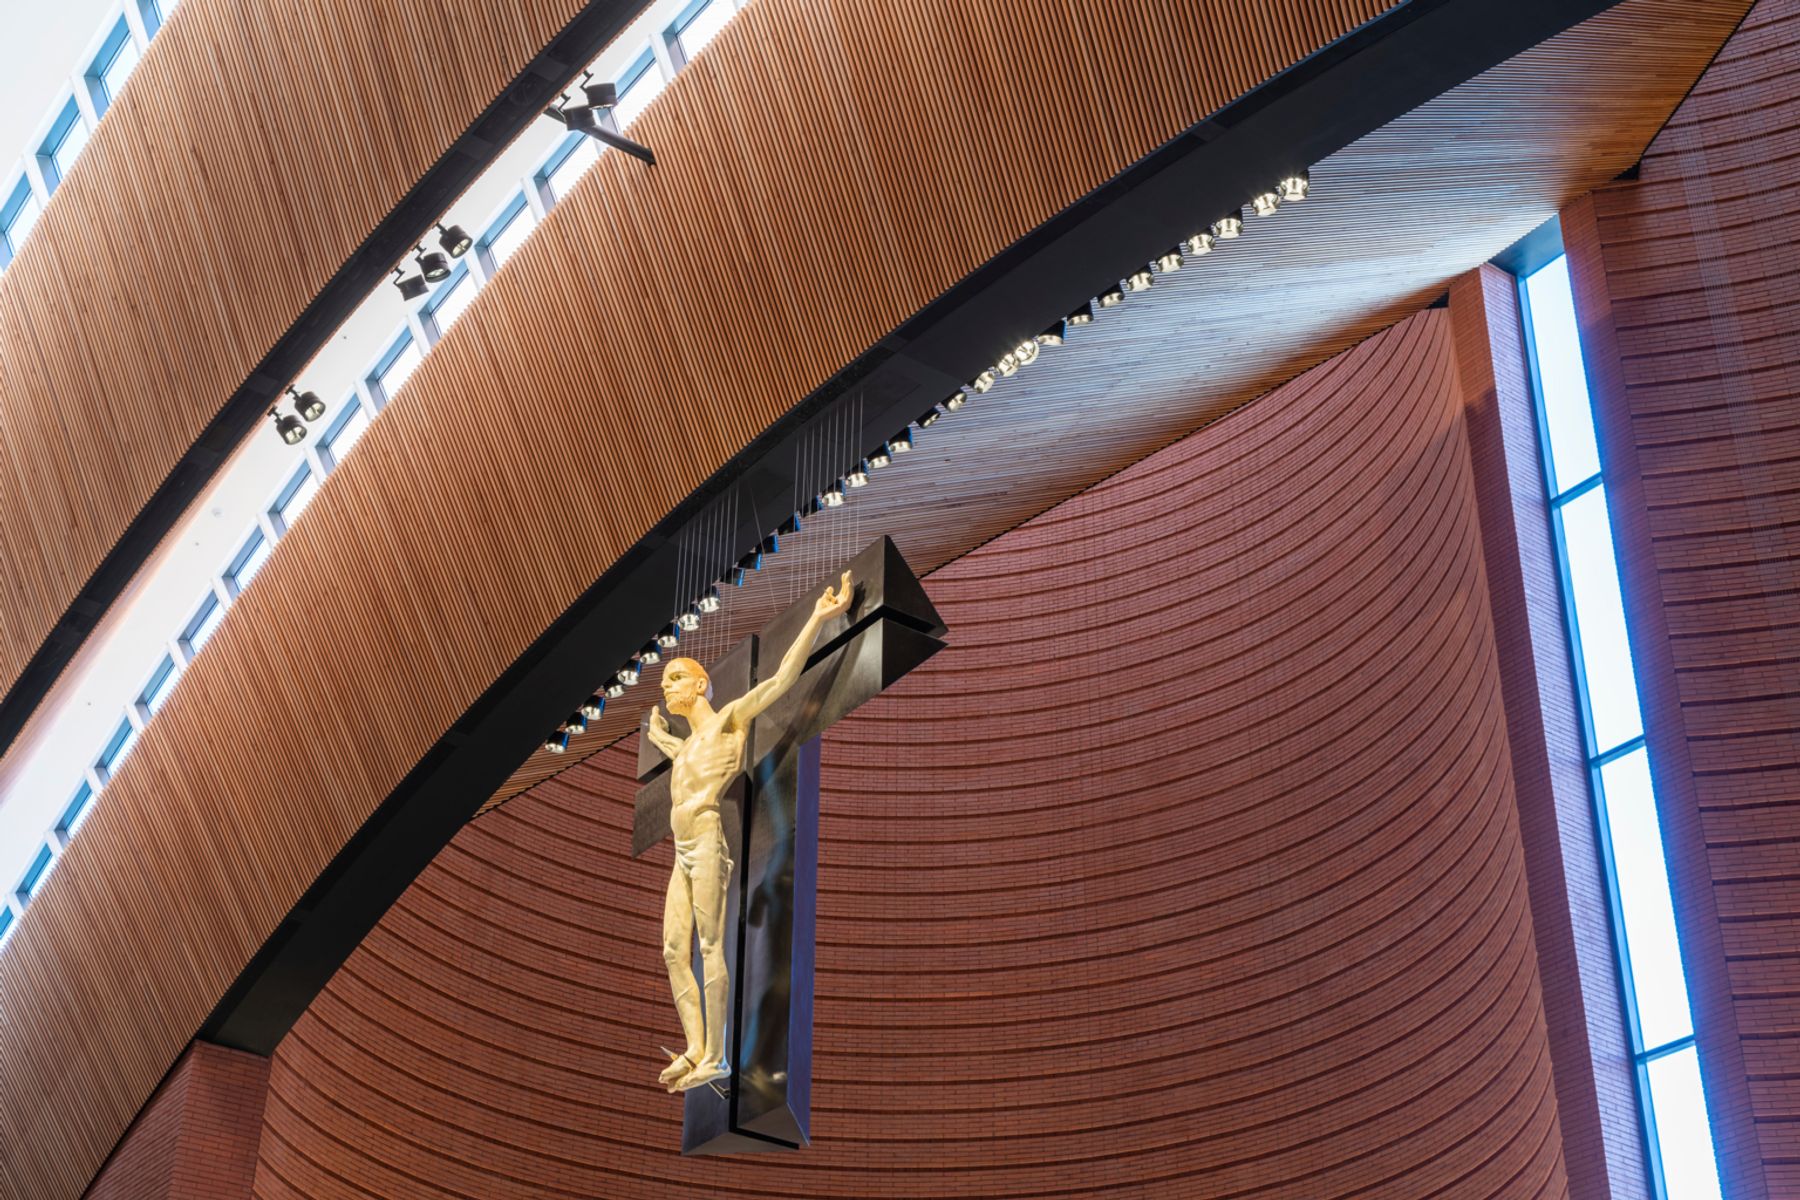 The Shrine of our Lady Rosary of NamYang, Corea del Sud. Architetto: Mario Botta, Mendrisio. Progettazione illuminotecnica: bitzro & partners, Seoul. Fotografia: Efrain Mendez Tabares, Spagna